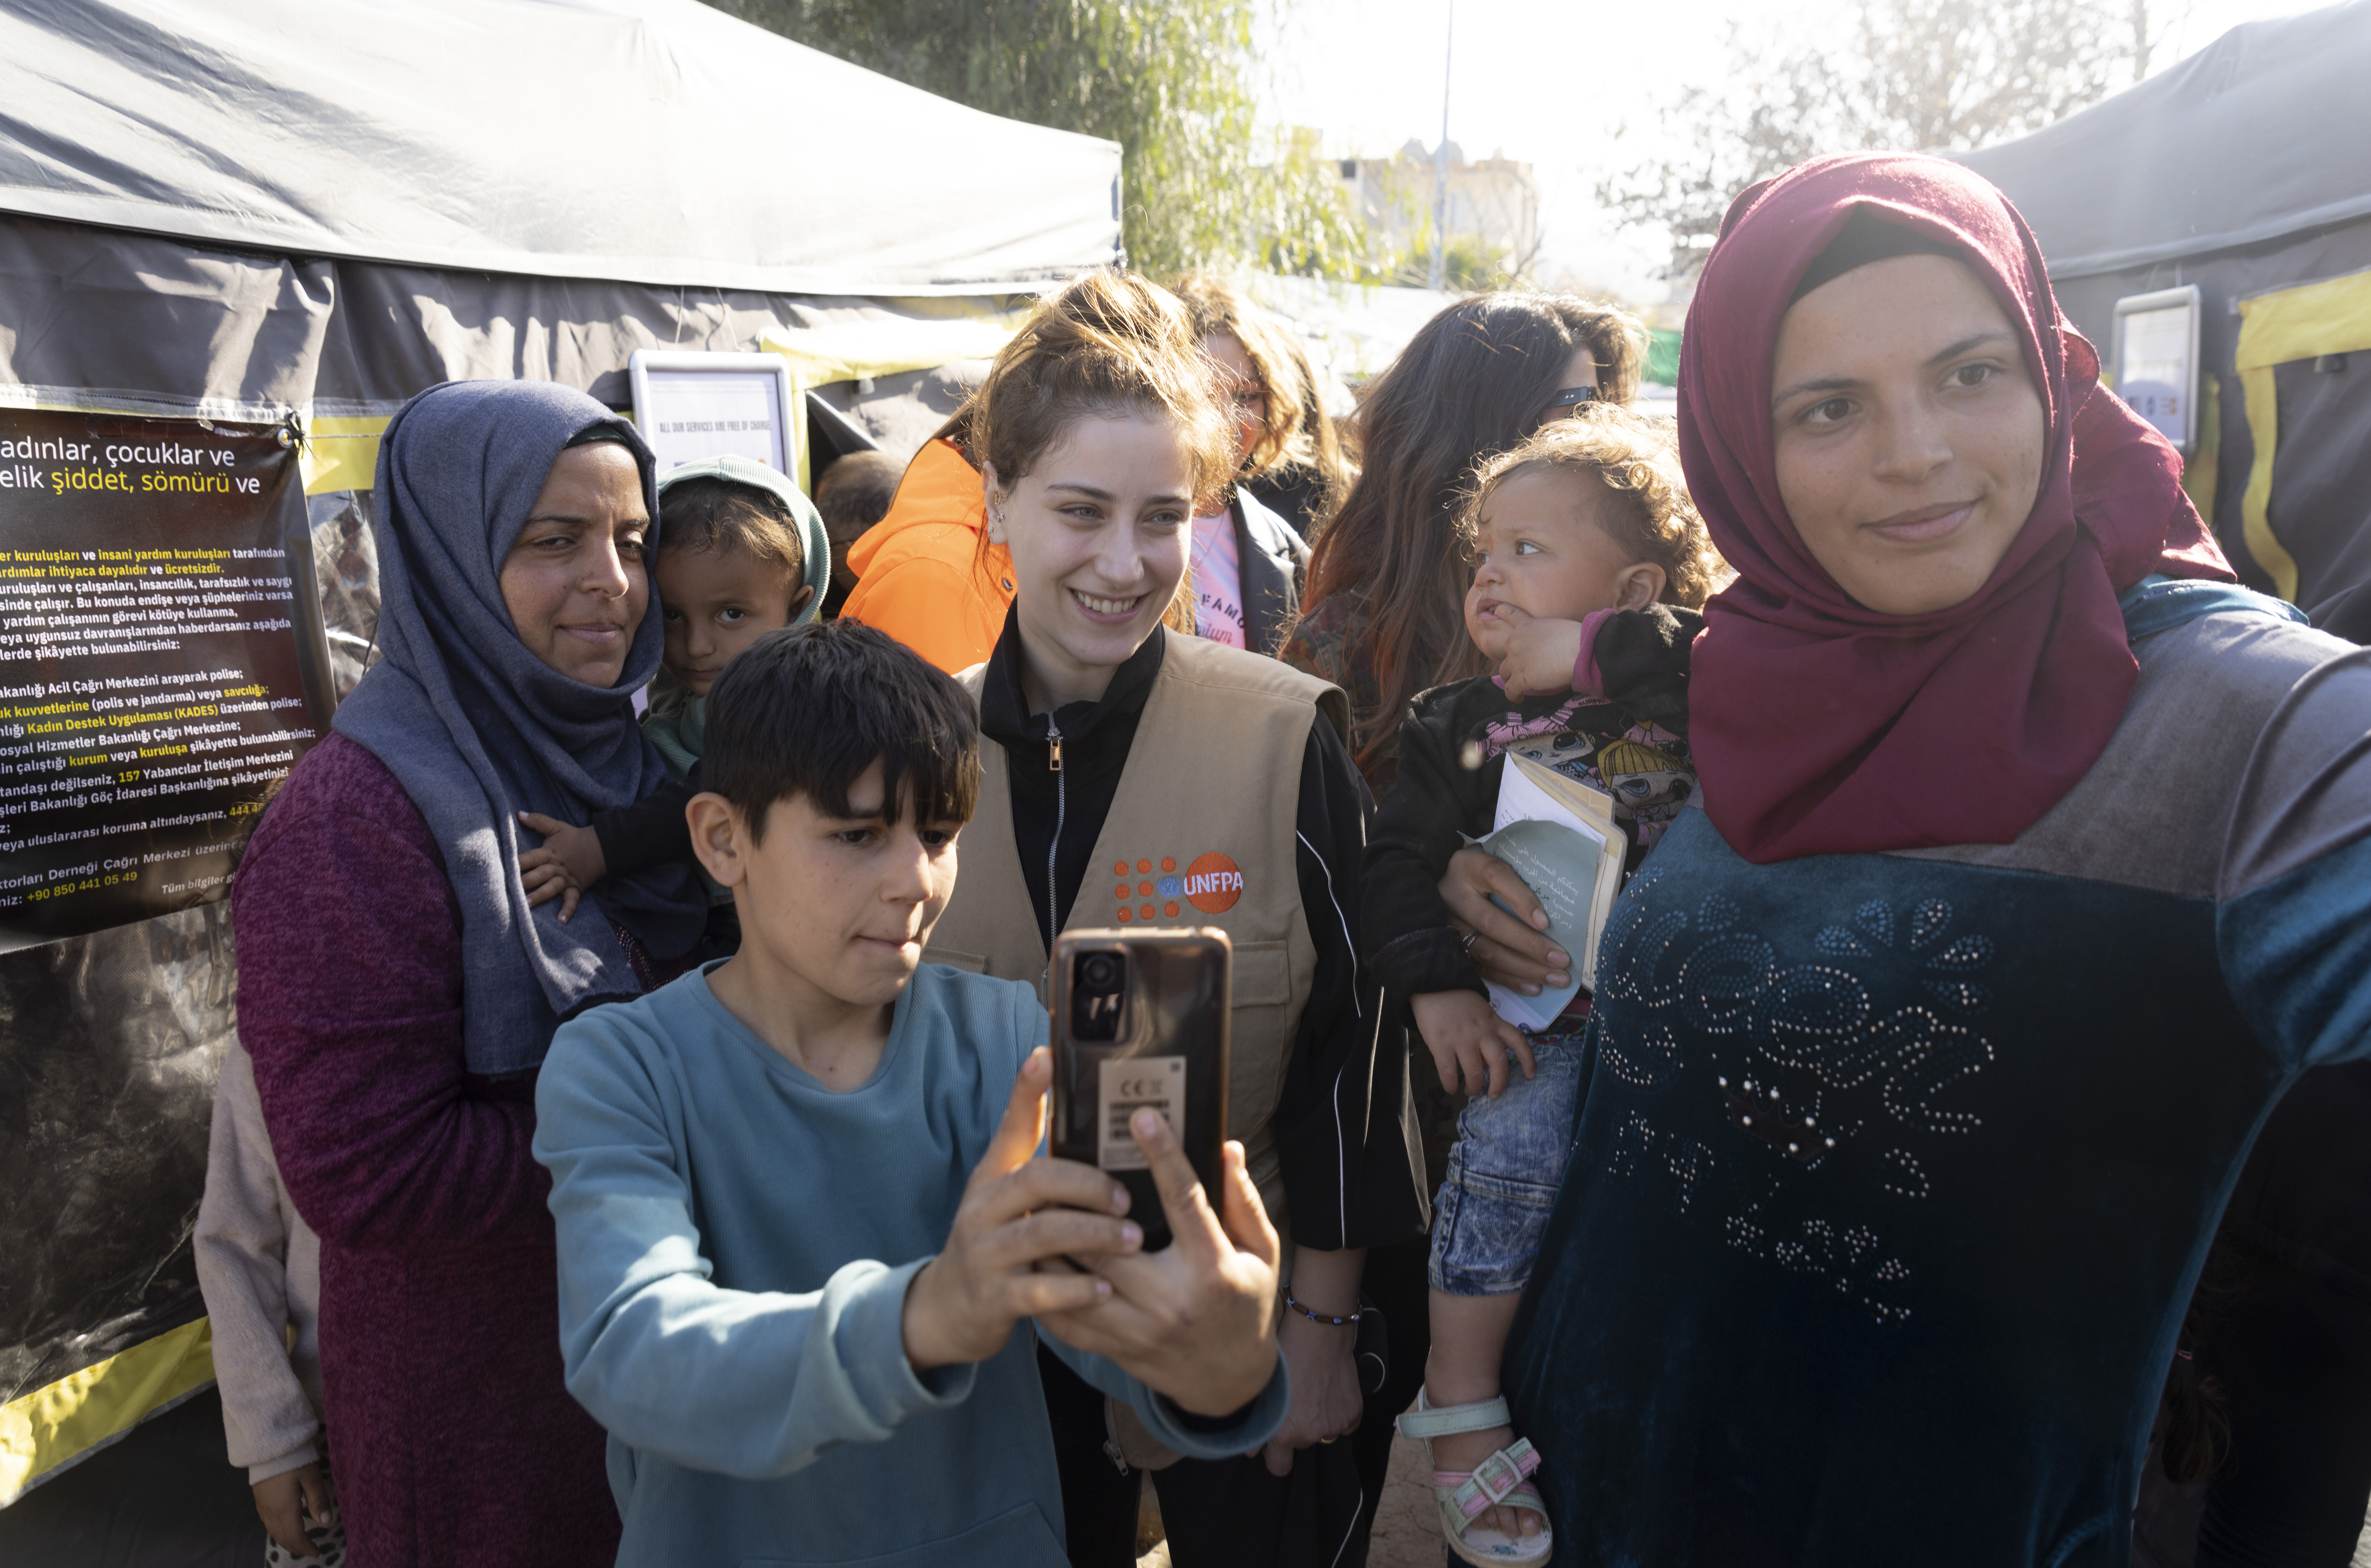 UNFPA Türkiye İyi niyet elçisi Hazal Kaya, bir grup kadın ve çocukla birlikte çadırların önünde poz vermektedir. 